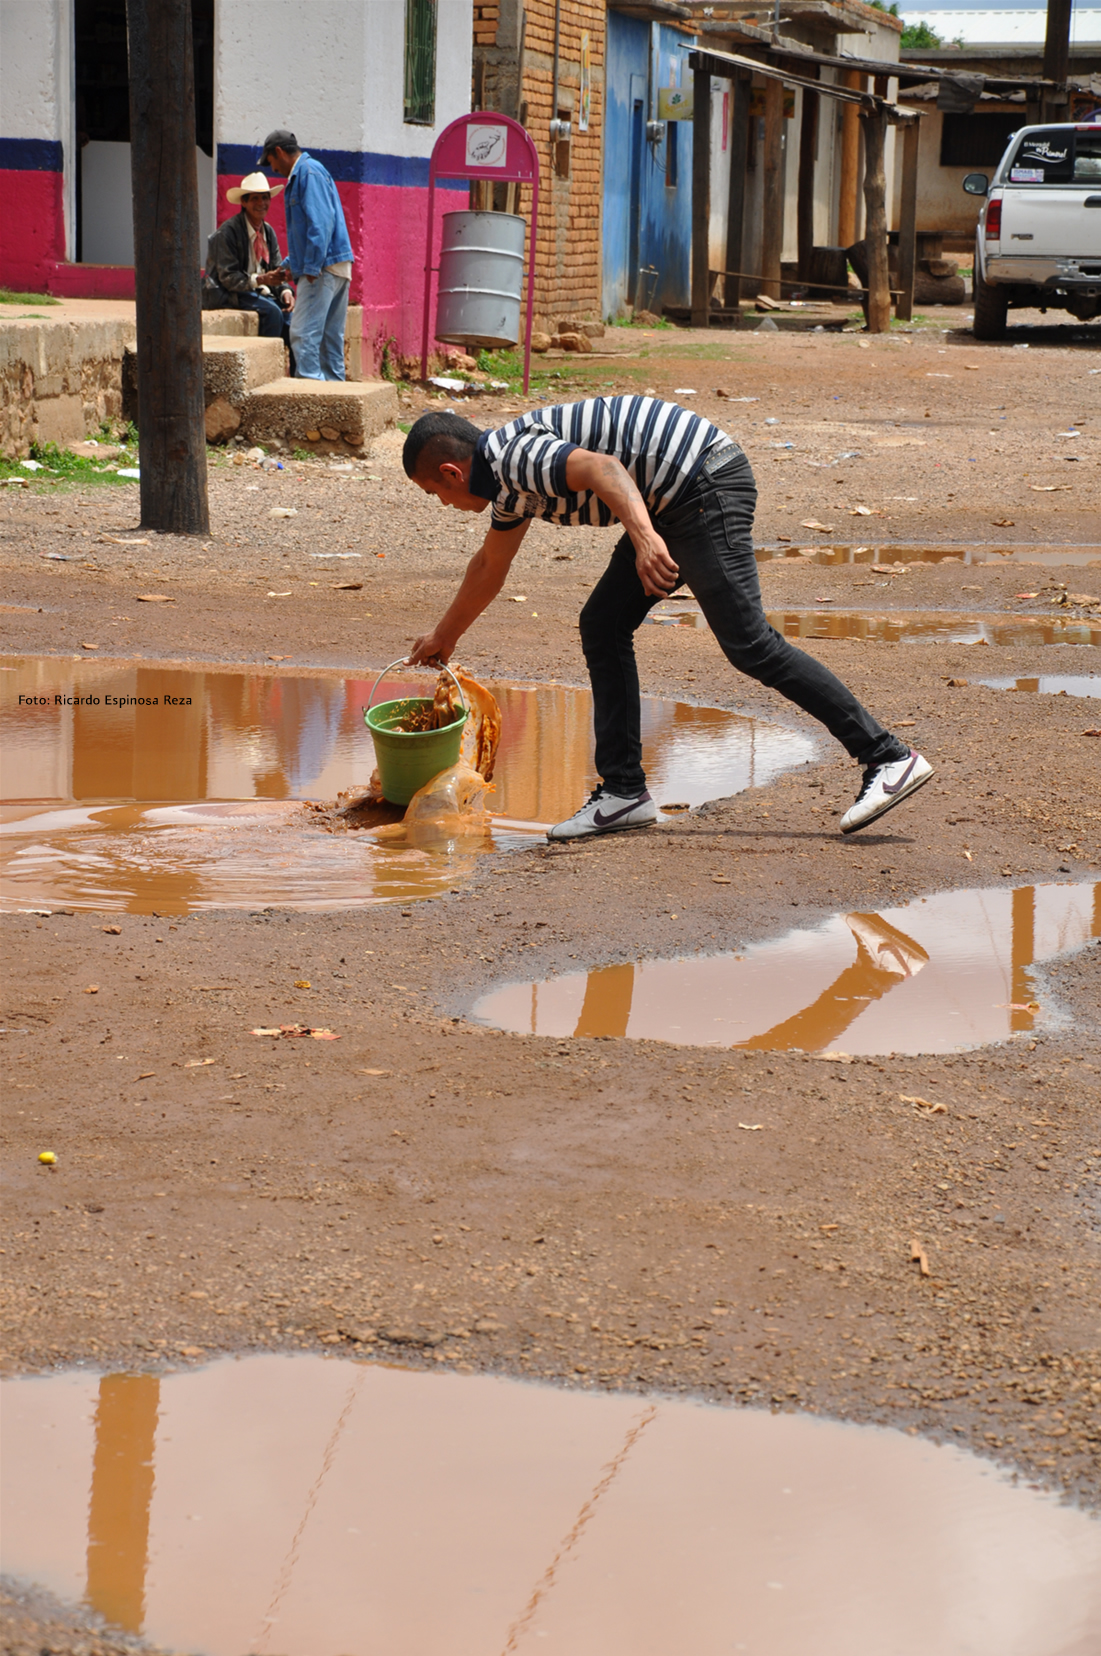 Recogiendo agua de los charcos después de una fugaz lluvia, Durango, 2012. Cada gota es valiosa